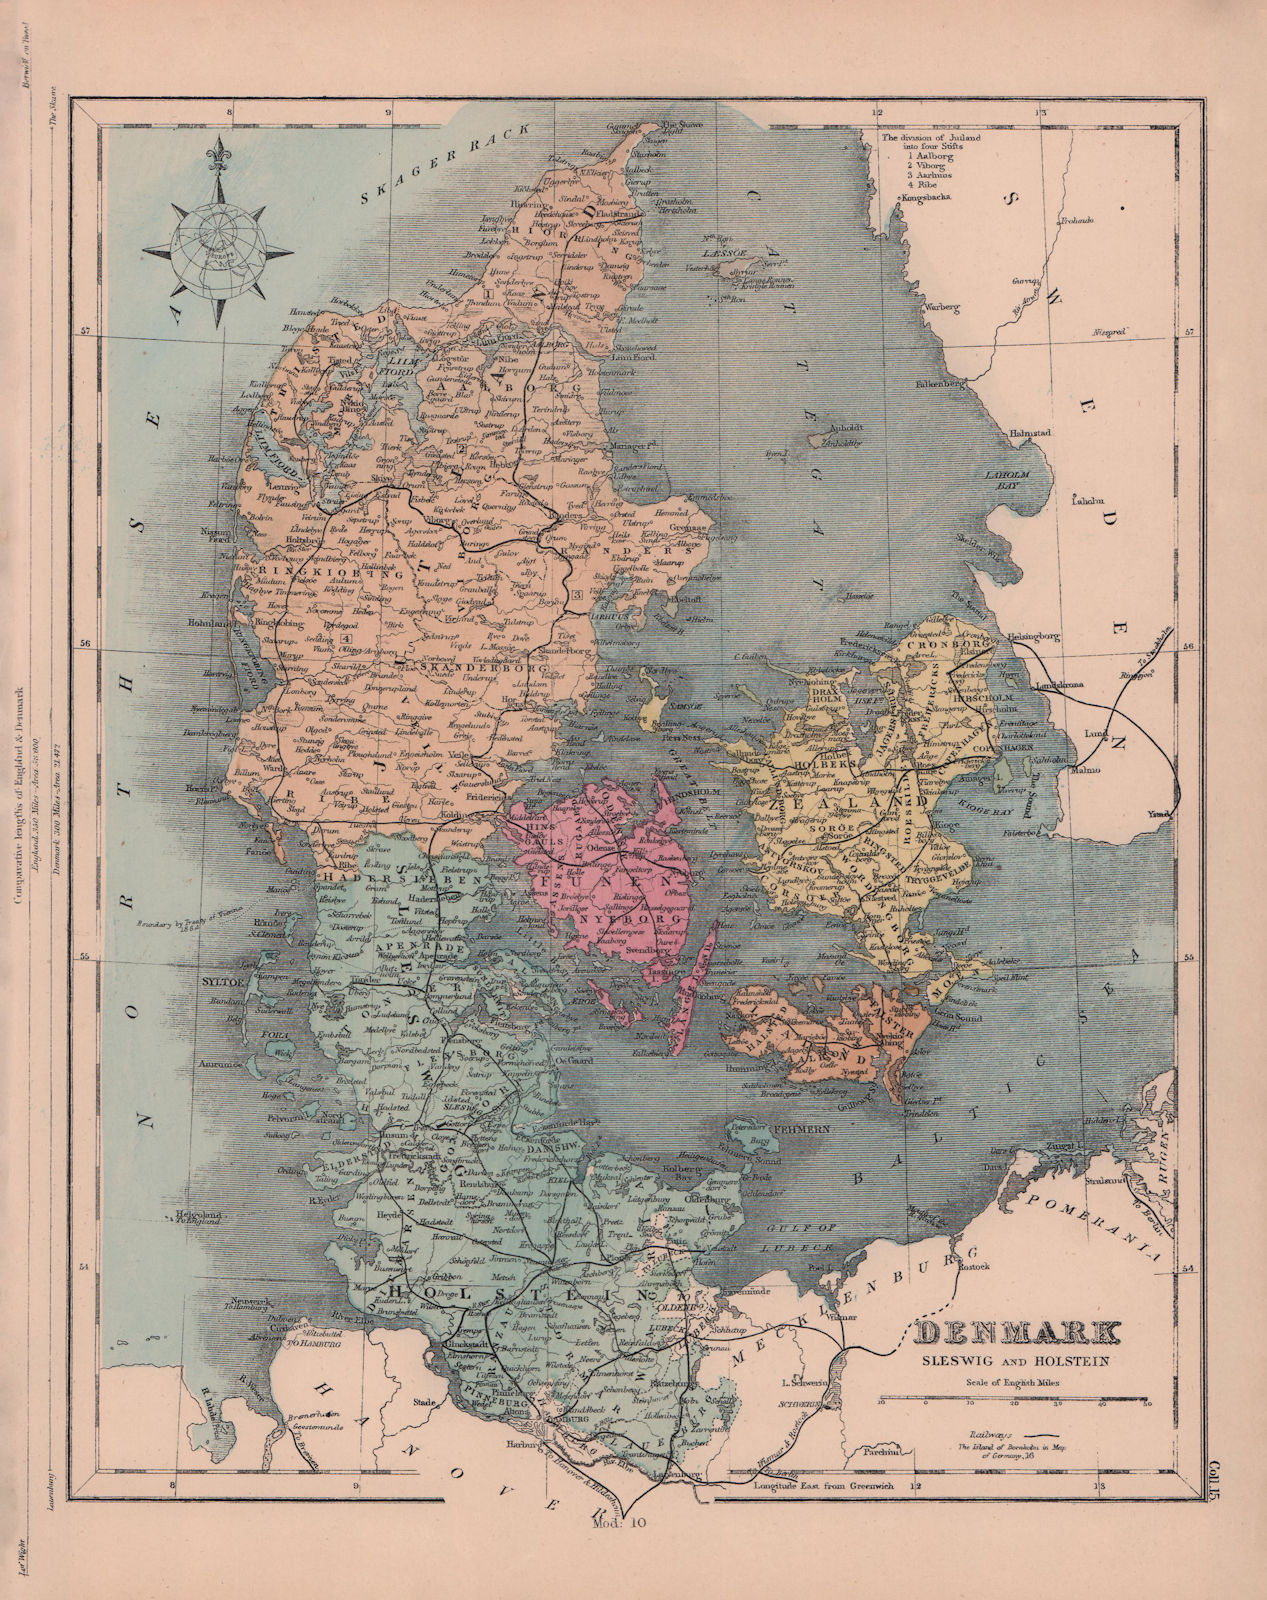 Denmark, Schleswig and Holstein. Railways. HUGHES 1876 old antique map chart